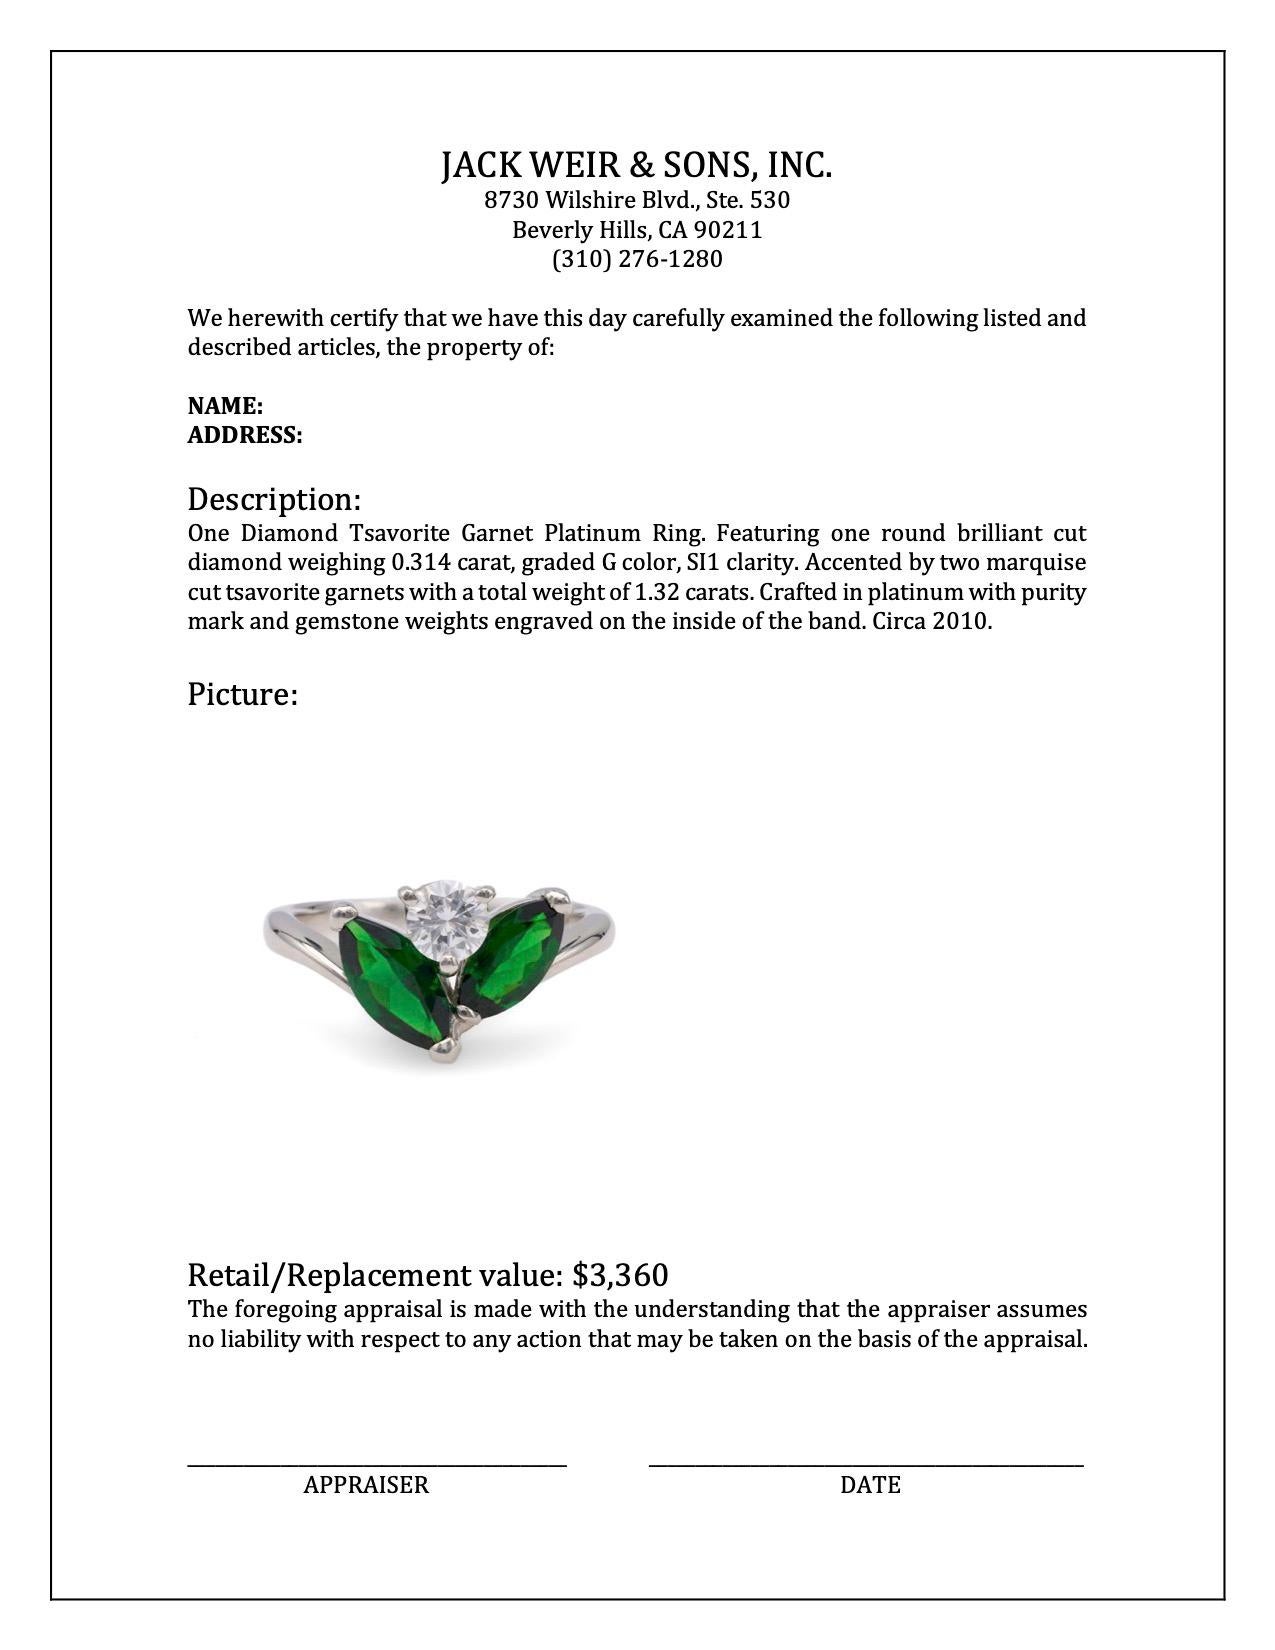 Women's or Men's Diamond Tsavorite Garnet Platinum Ring For Sale